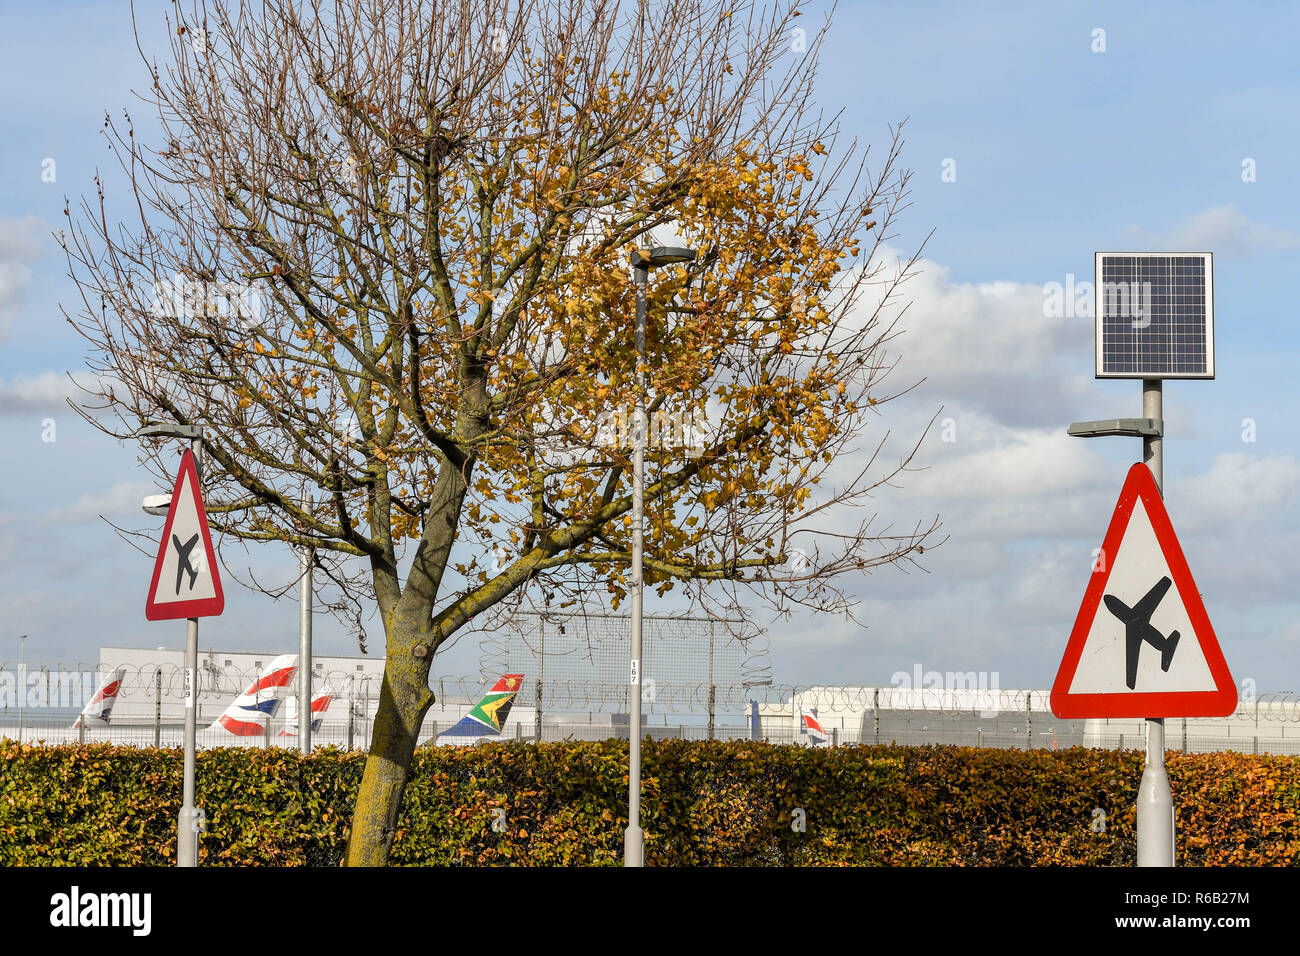 Londres, ANGLETERRE - NOVEMBRE 2018 : signe de route sur la route A30 à l'aéroport Heathrow de Londres les automobilistes d'avertissement des aéronefs volant à basse altitude. La lumière de l'enseigne Banque D'Images